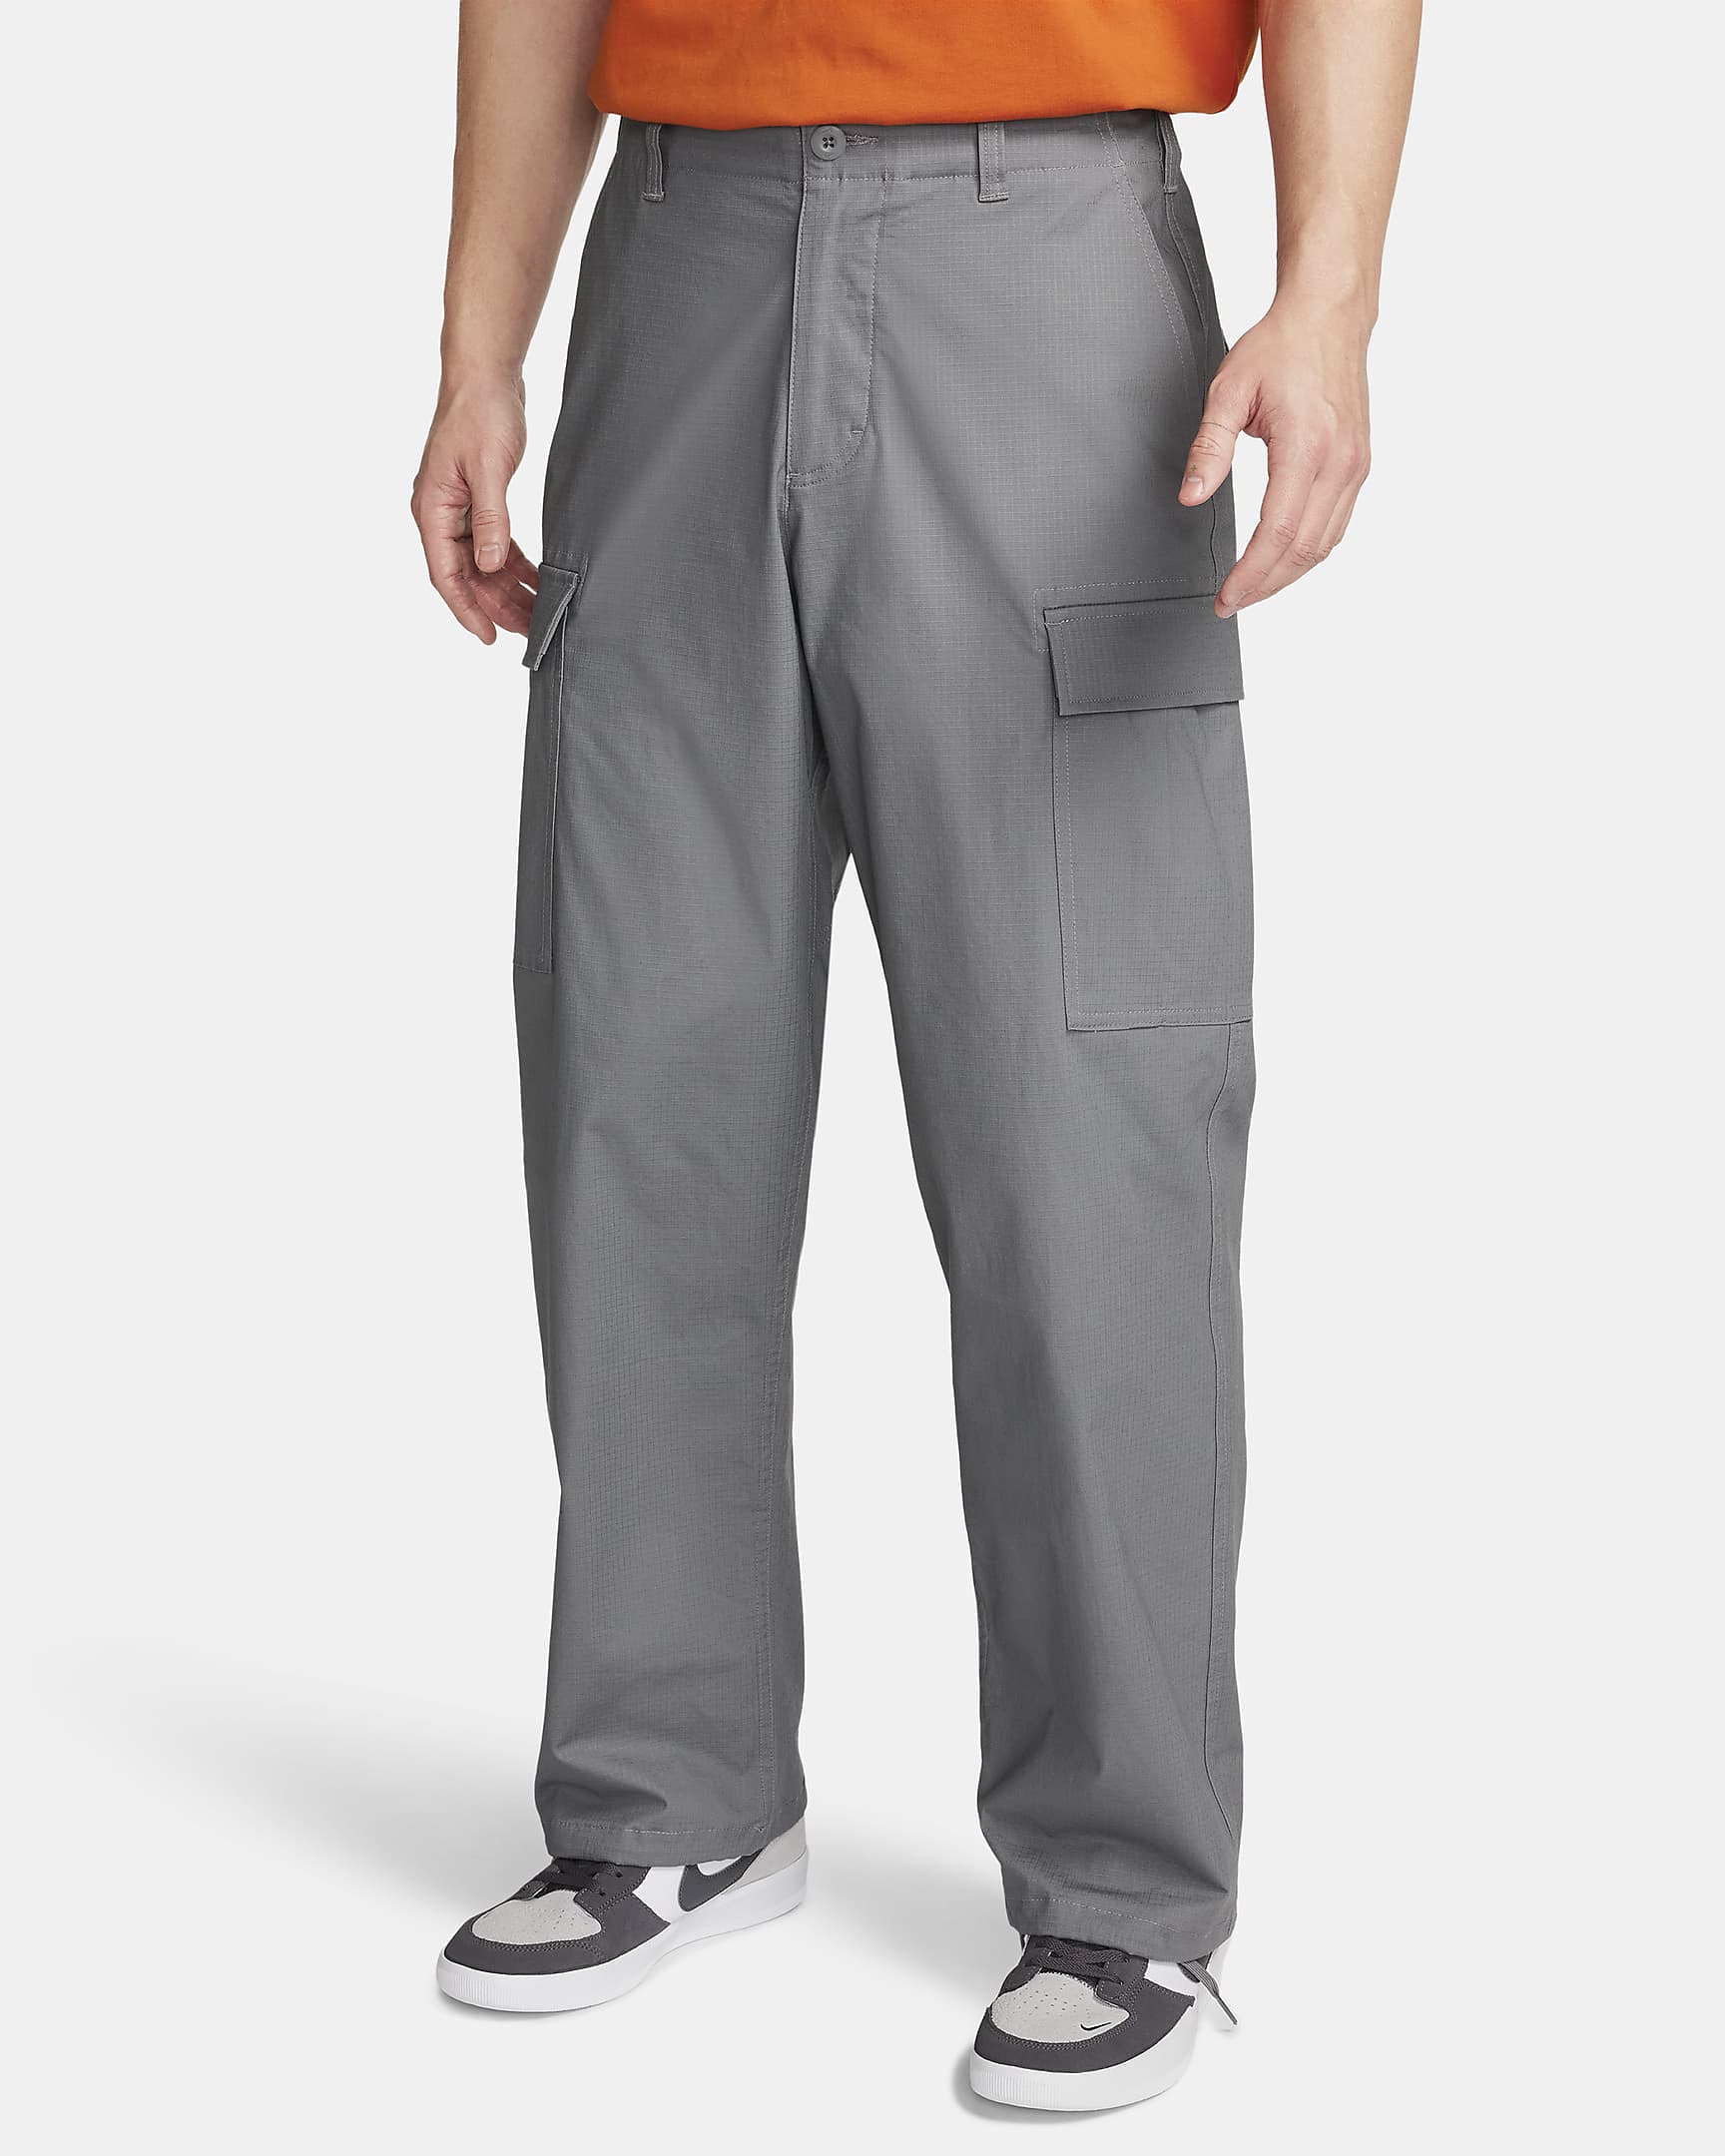 Smoke Grey Kearny Cargo Nike SB Pants